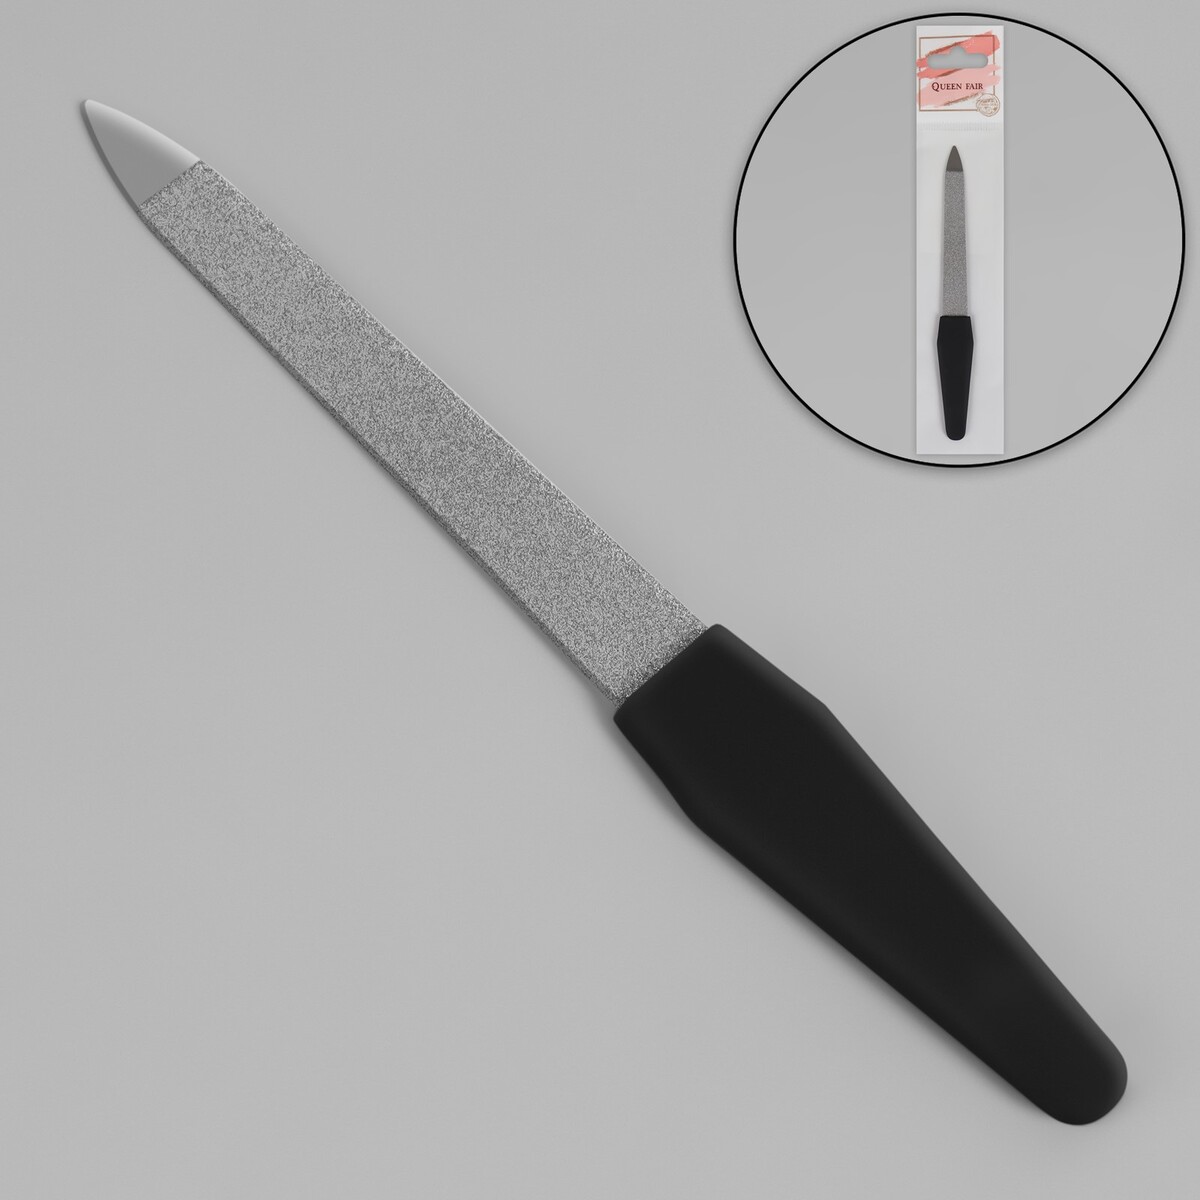 Пилка металлическая для ногтей, прорезиненная ручка, 12 см, цвет серебристый/черный пилка металлическая для ногтей 15 см золотистый